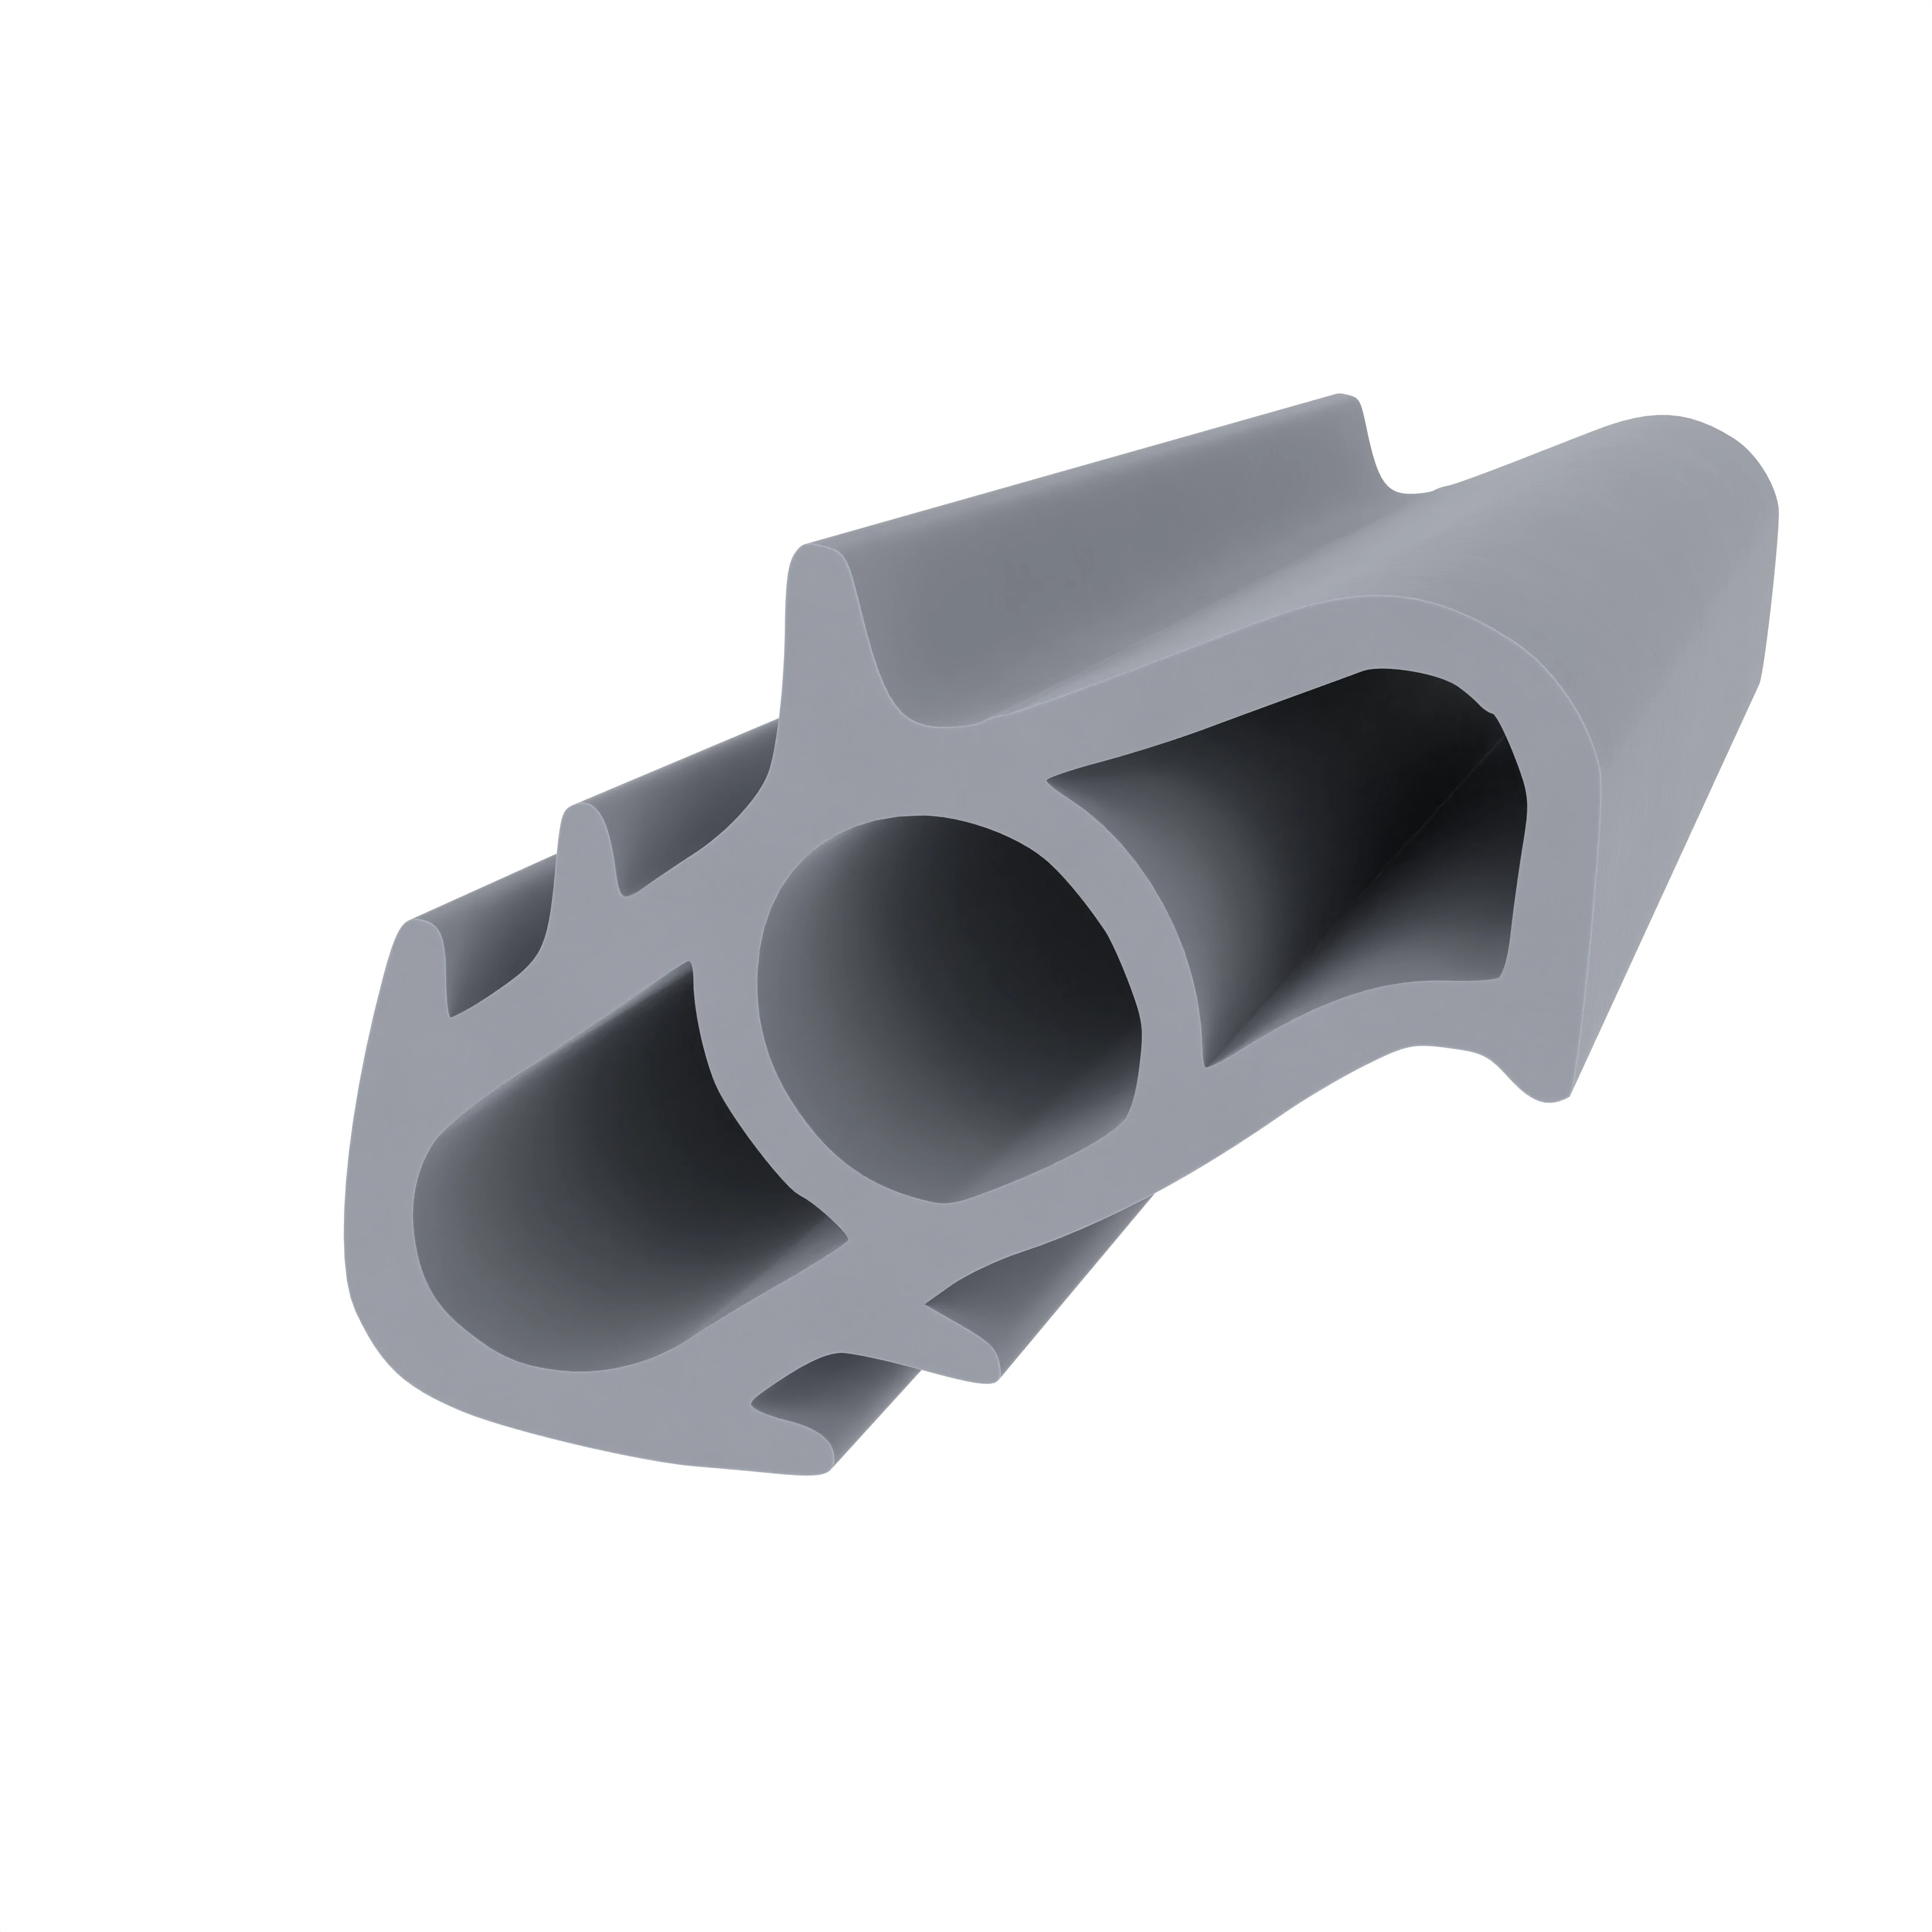 Stahlzargendichtung für Stahlzargen | 16 mm Höhe | Farbe: grau